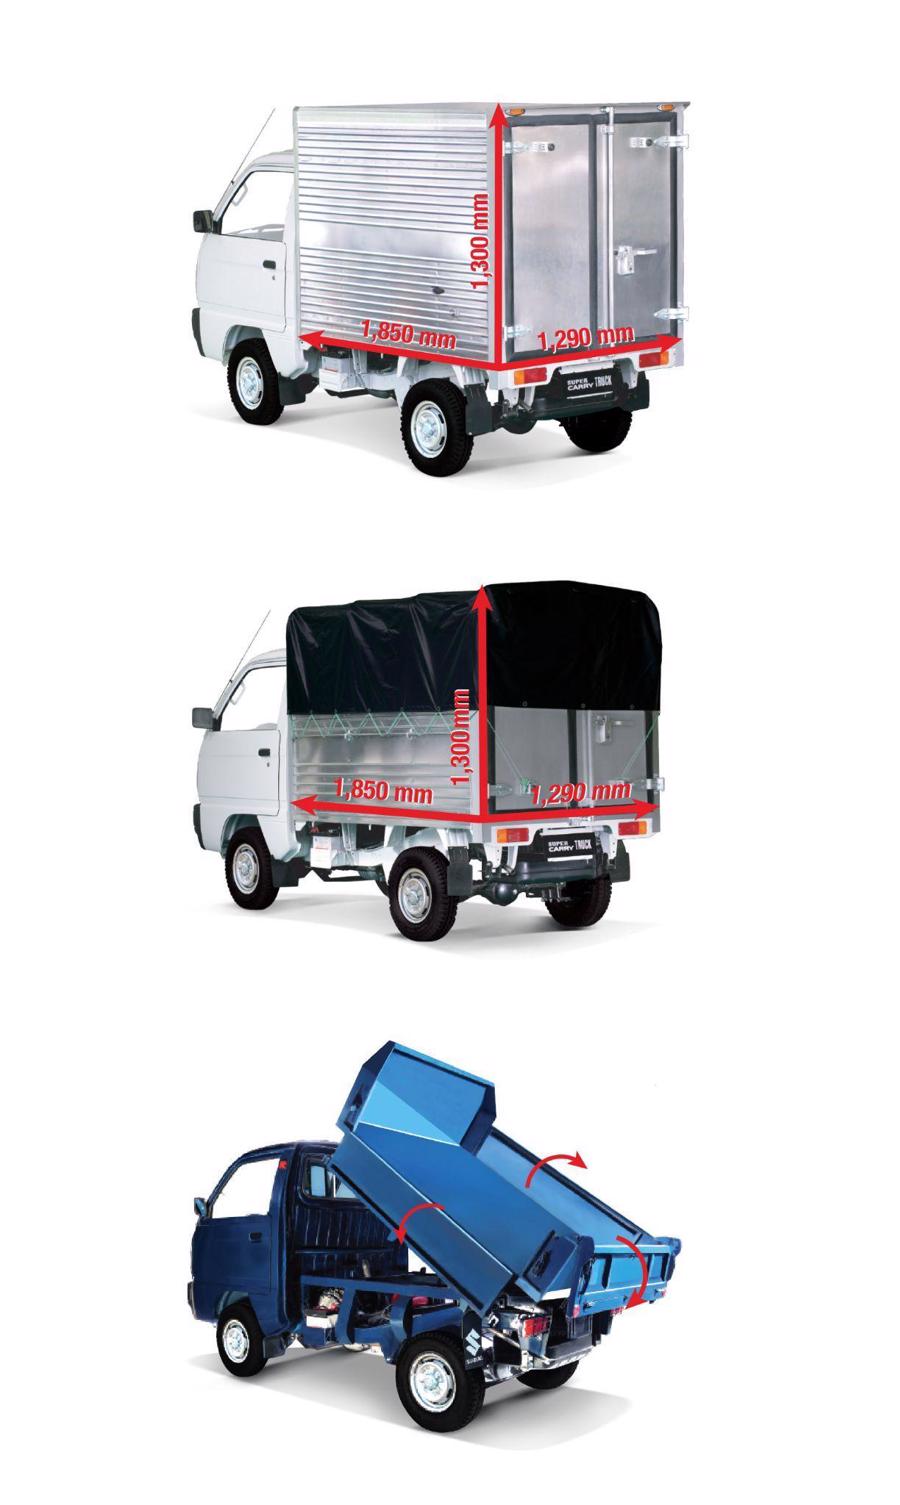 Kh&aacute;ch h&agrave;ng Suzuki Carry Truck Truck c&oacute; nhiều lựa chọn th&ugrave;ng xe: th&ugrave;ng k&iacute;n, mui bạt, th&ugrave;ng ben (theo thứ tự từ tr&ecirc;n xuống).